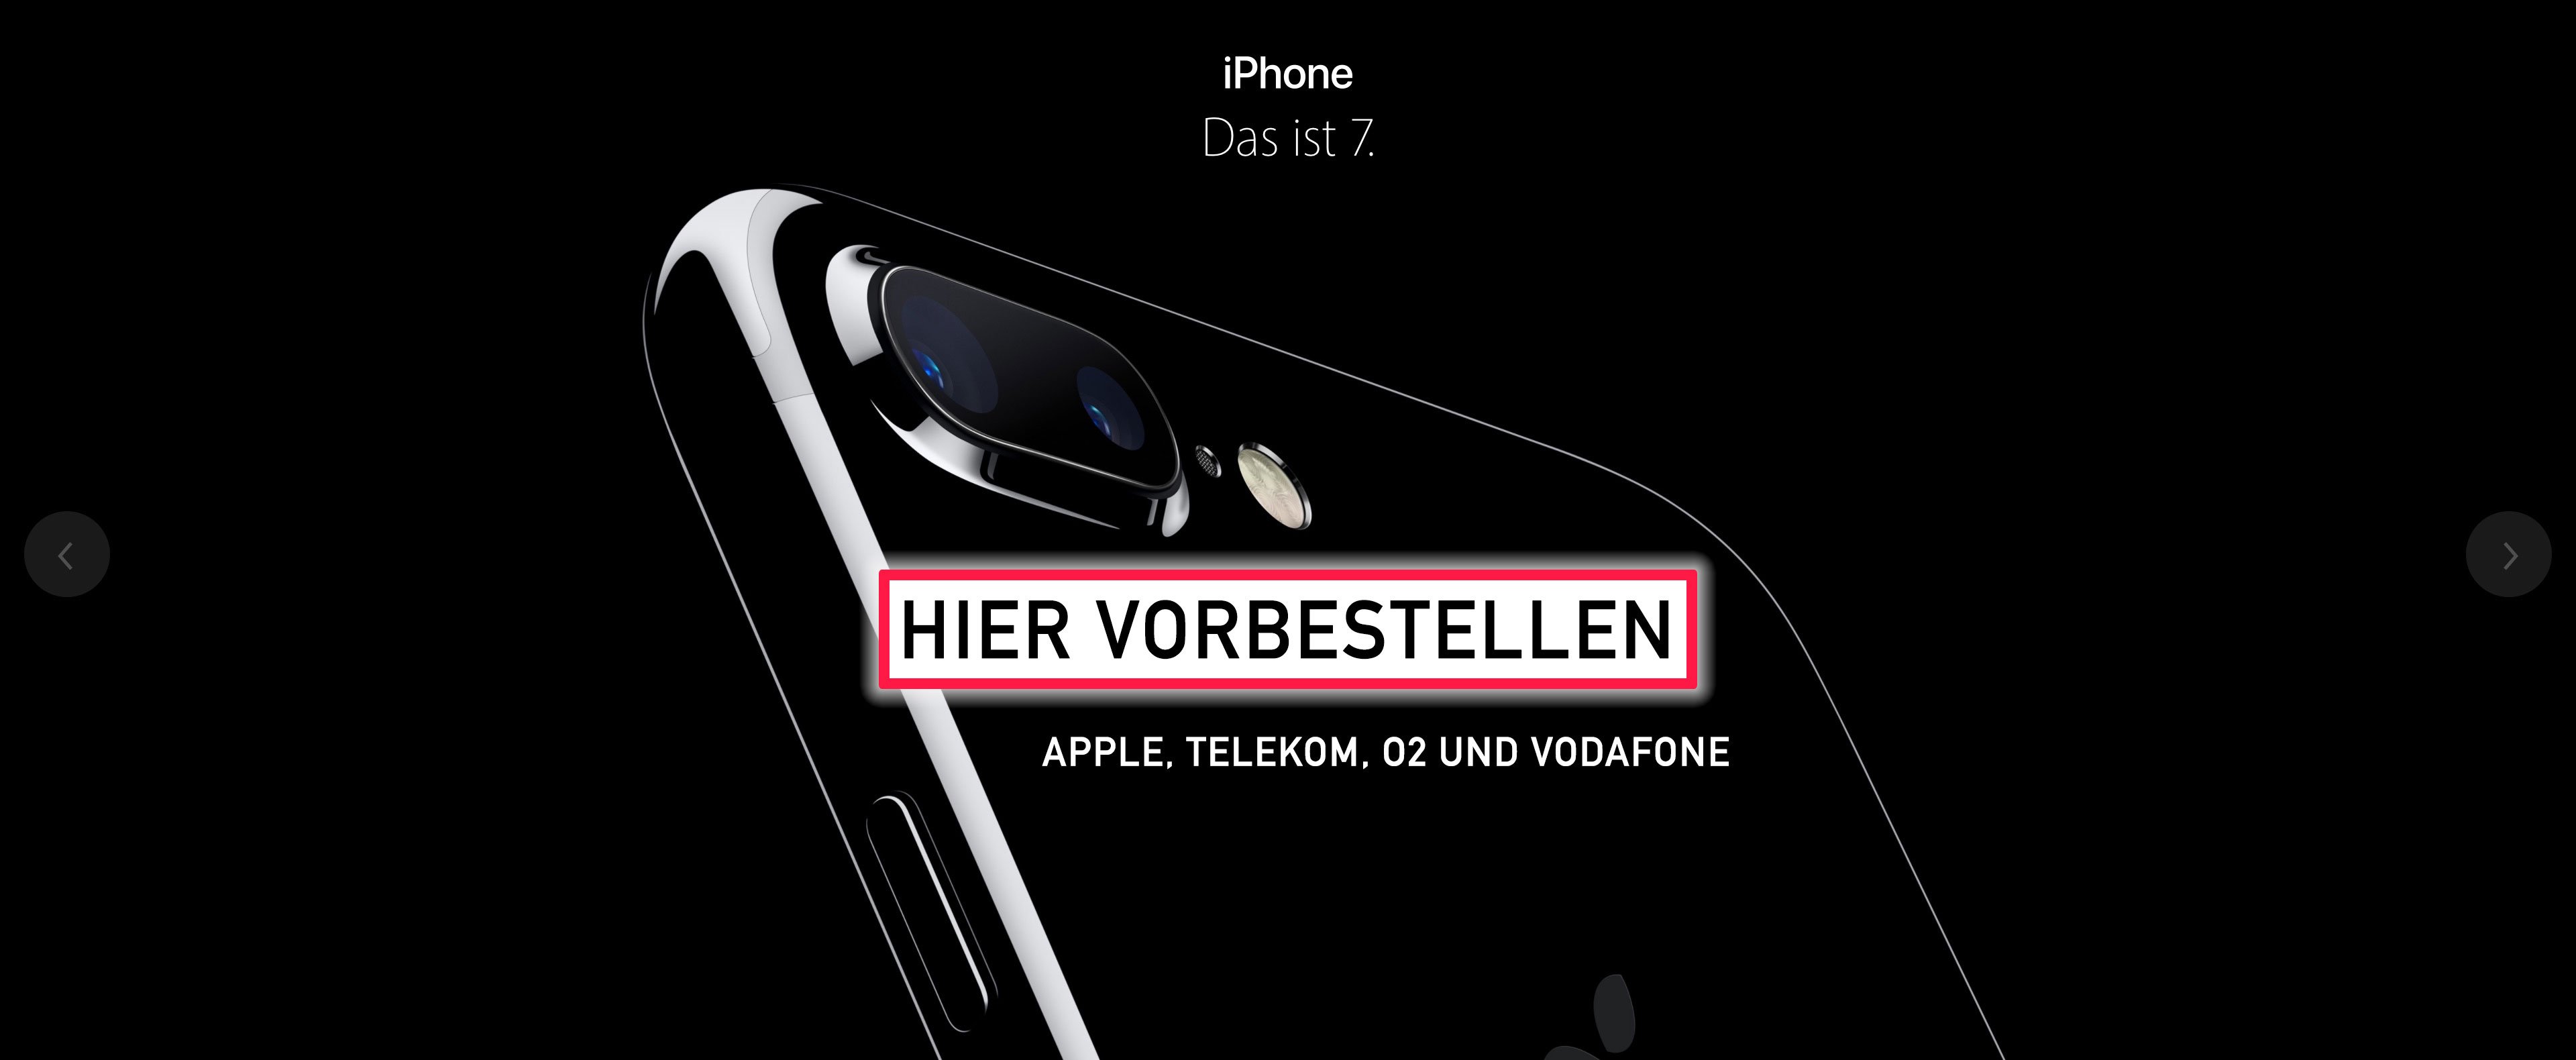 iPhone 7 vorbestellen: iPhone 7 bei O2, Telekom und Vodafone jetzt online erhältlich! 1